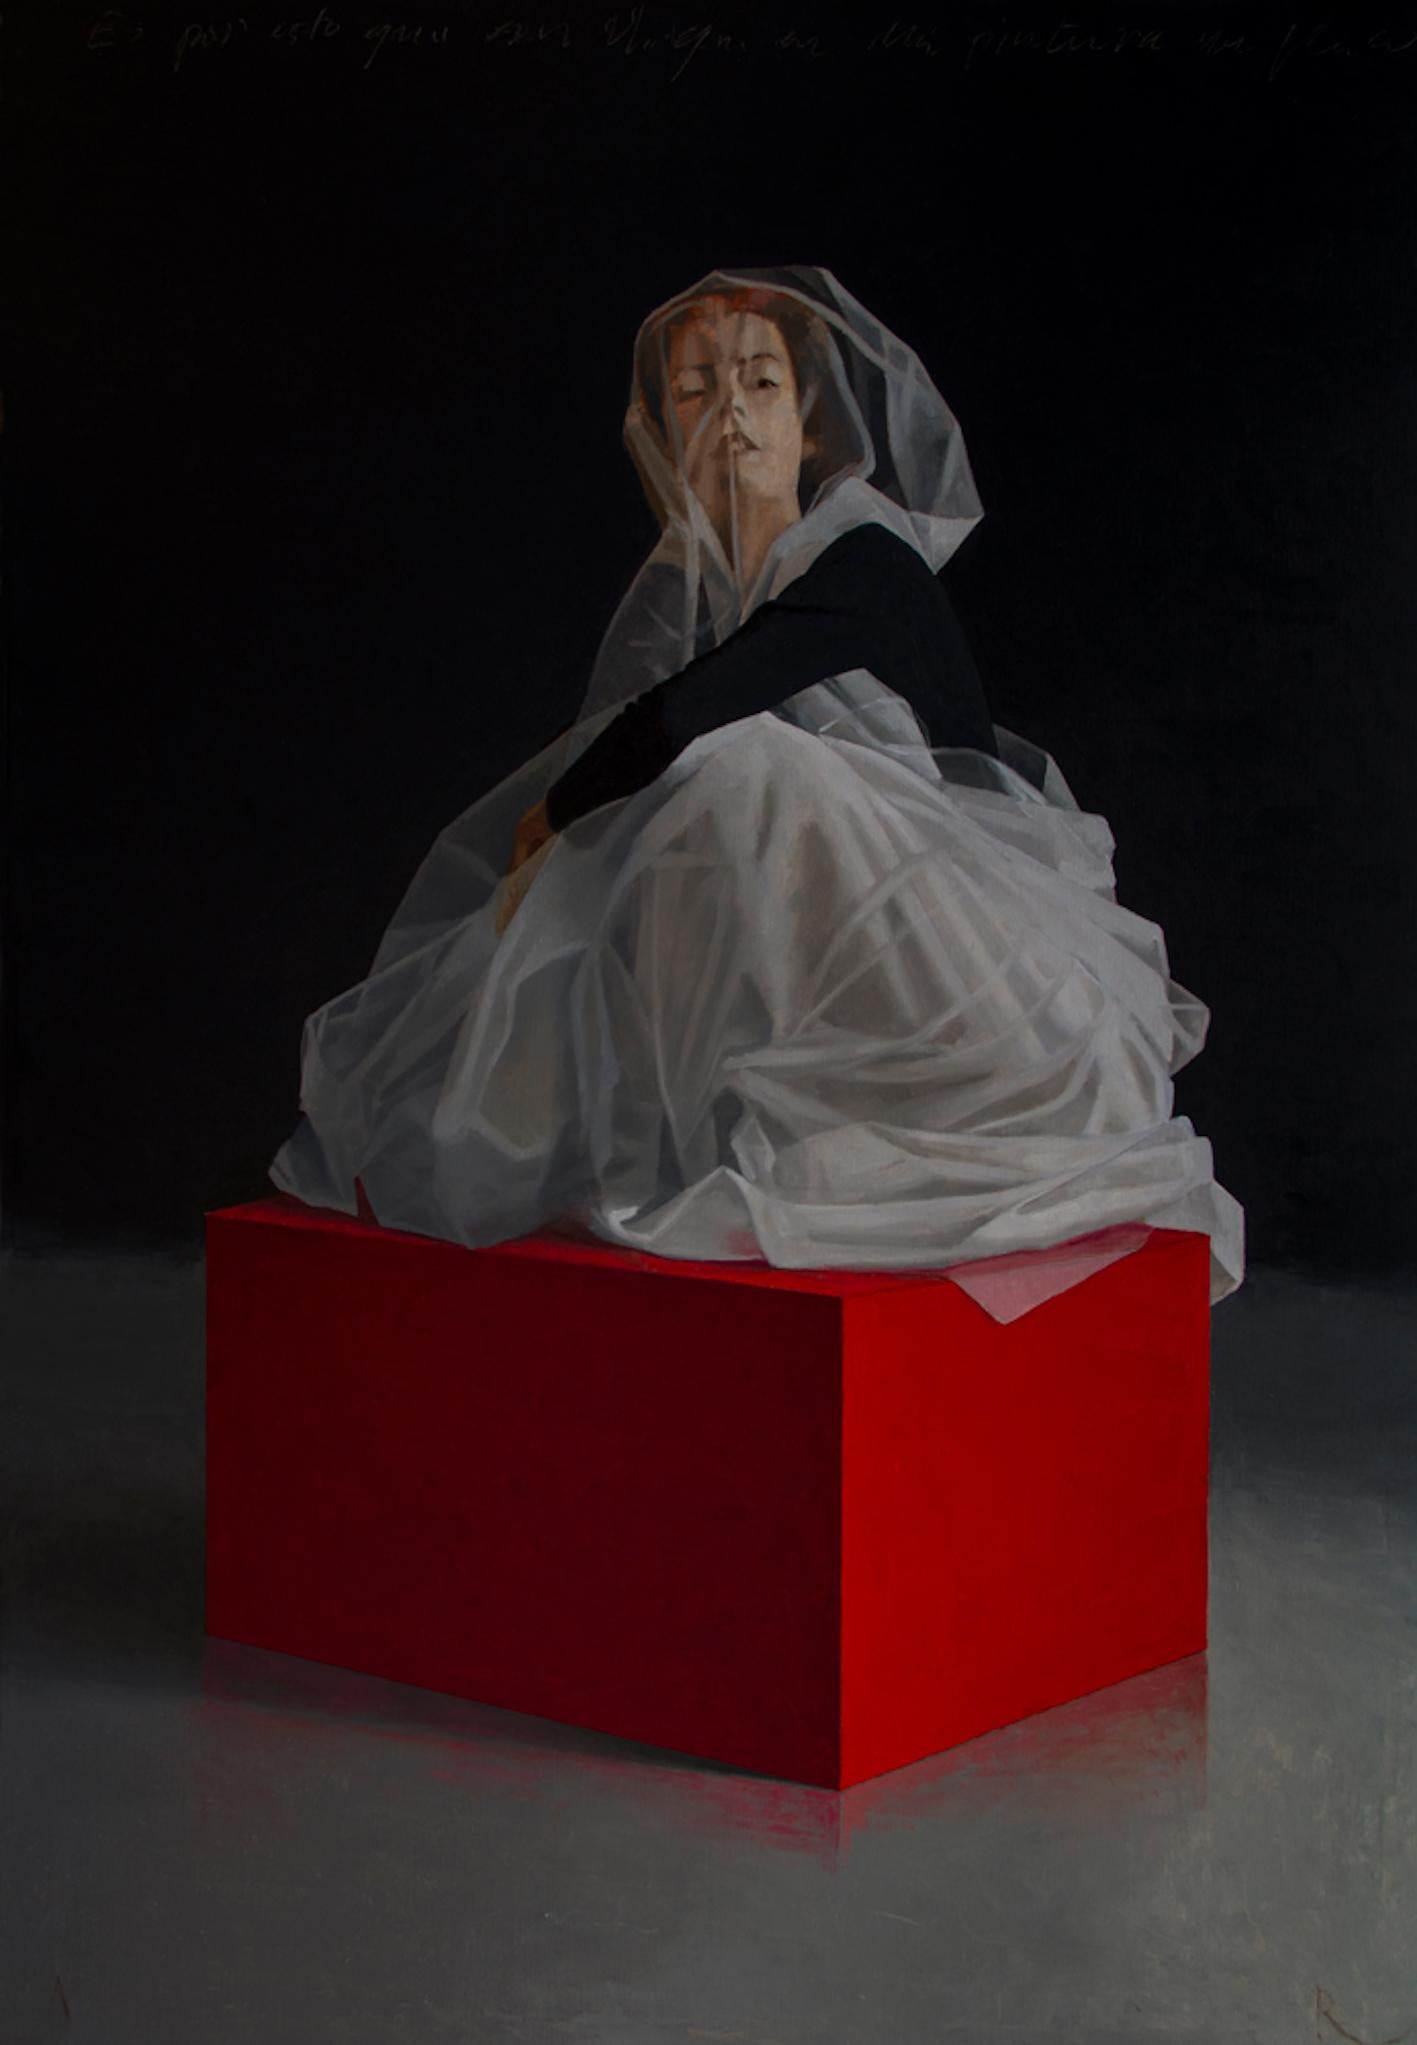 Figurative Painting Adolfo Ramon - Femme sur étagère - Peinture à l'huile contemporaine du 21e siècle représentant une femme en robe